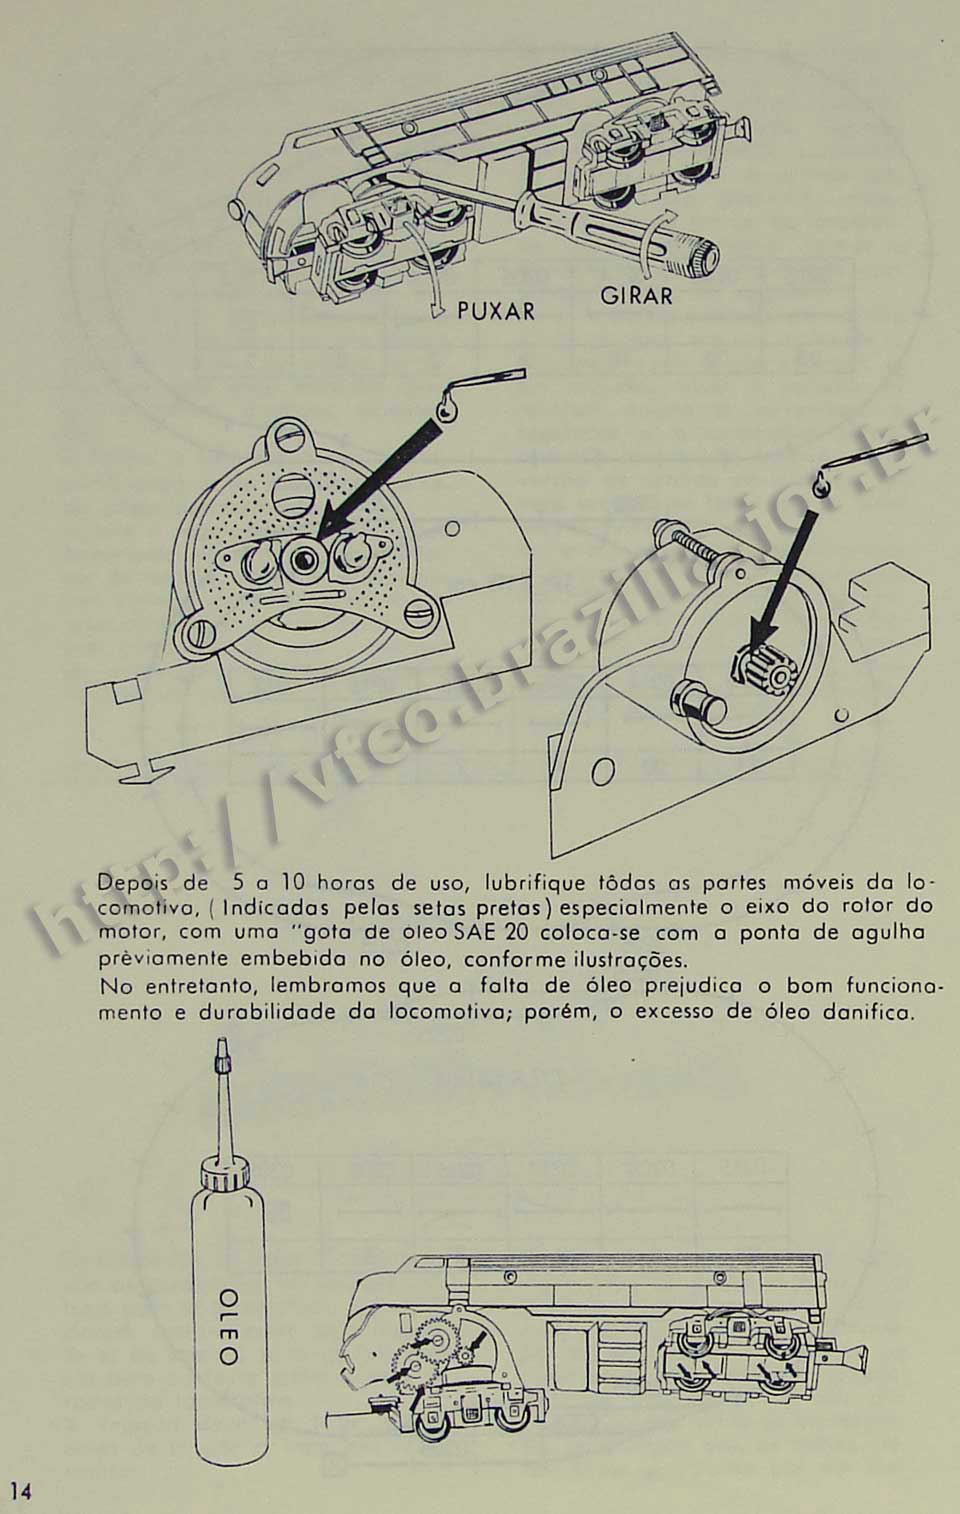 Orientações sobre a lubrificação do eixo do rotor do motor da locomotiva, na Página 14 do manual "Como montar e operar seu trem elétrico Atma" para maquete de ferreomodelismo